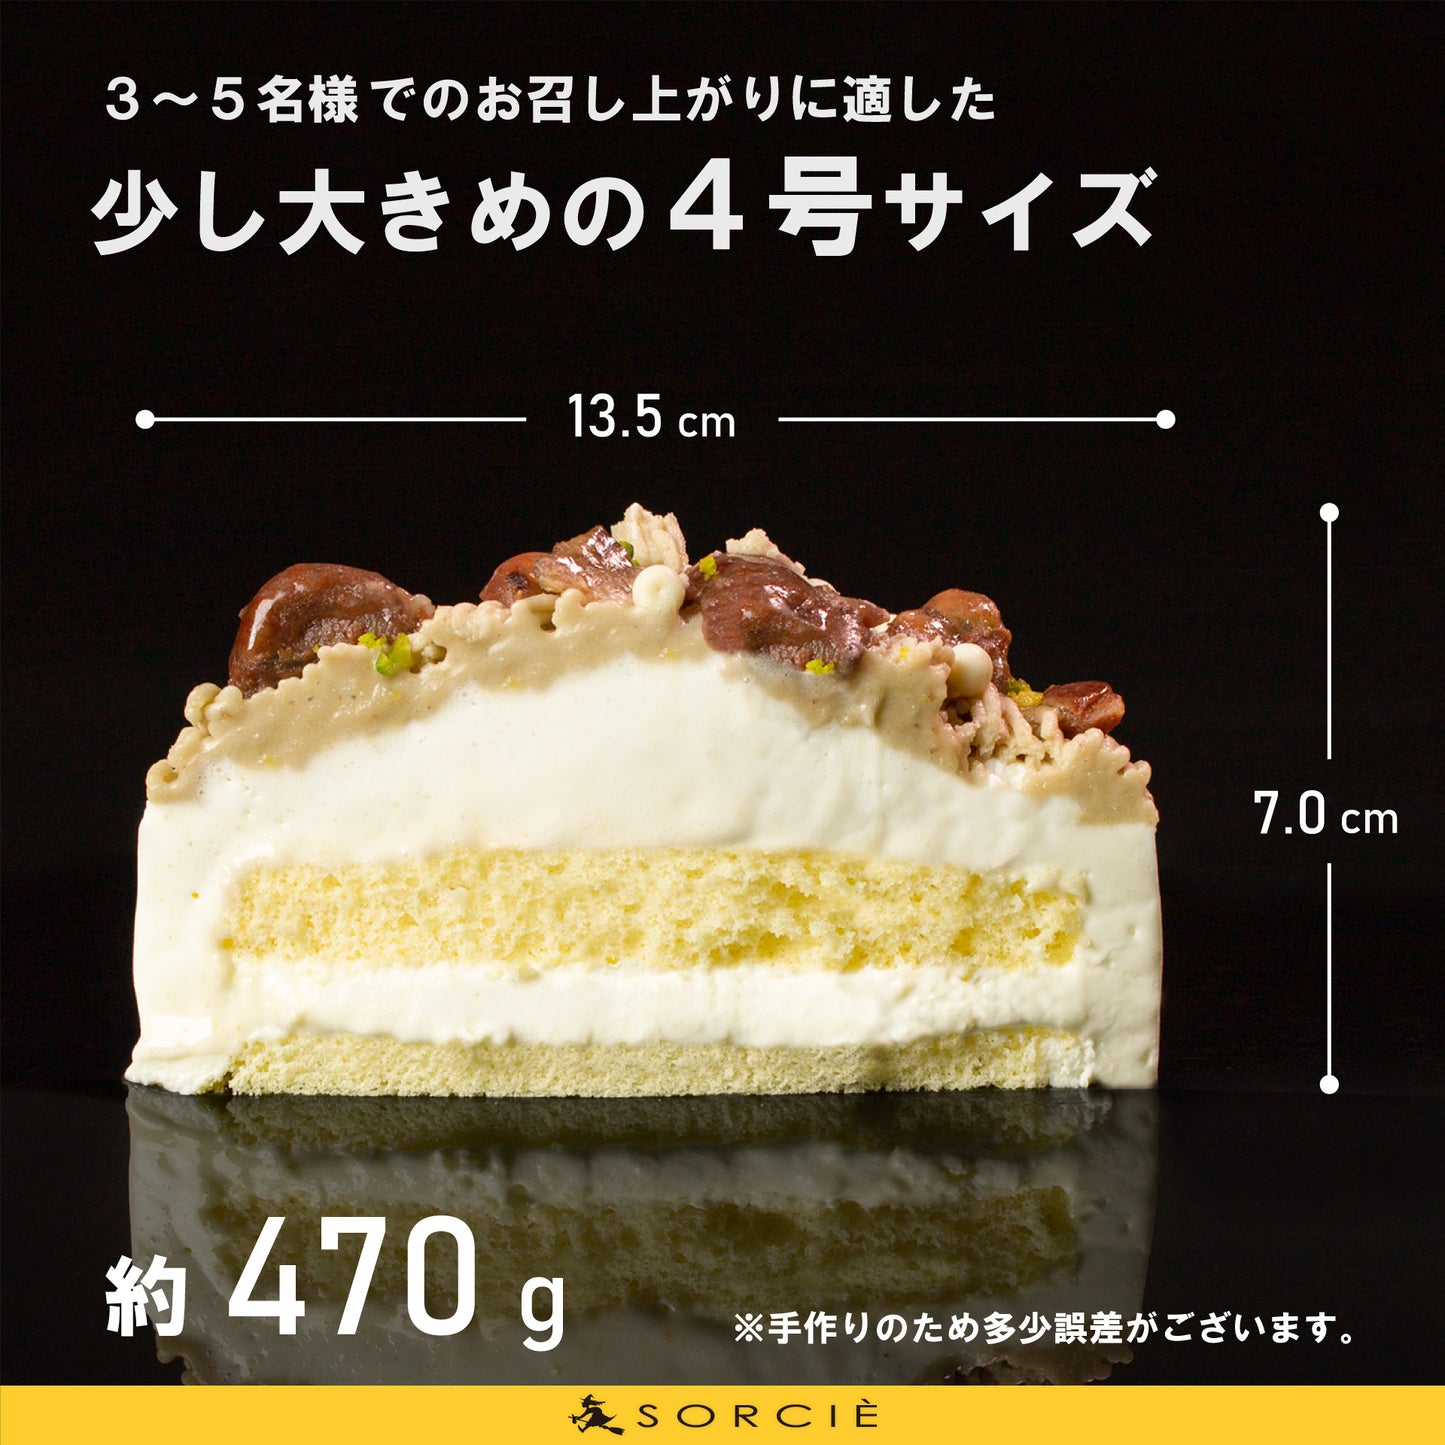 【宅配】和栗 モンブラン デコレーションケーキ